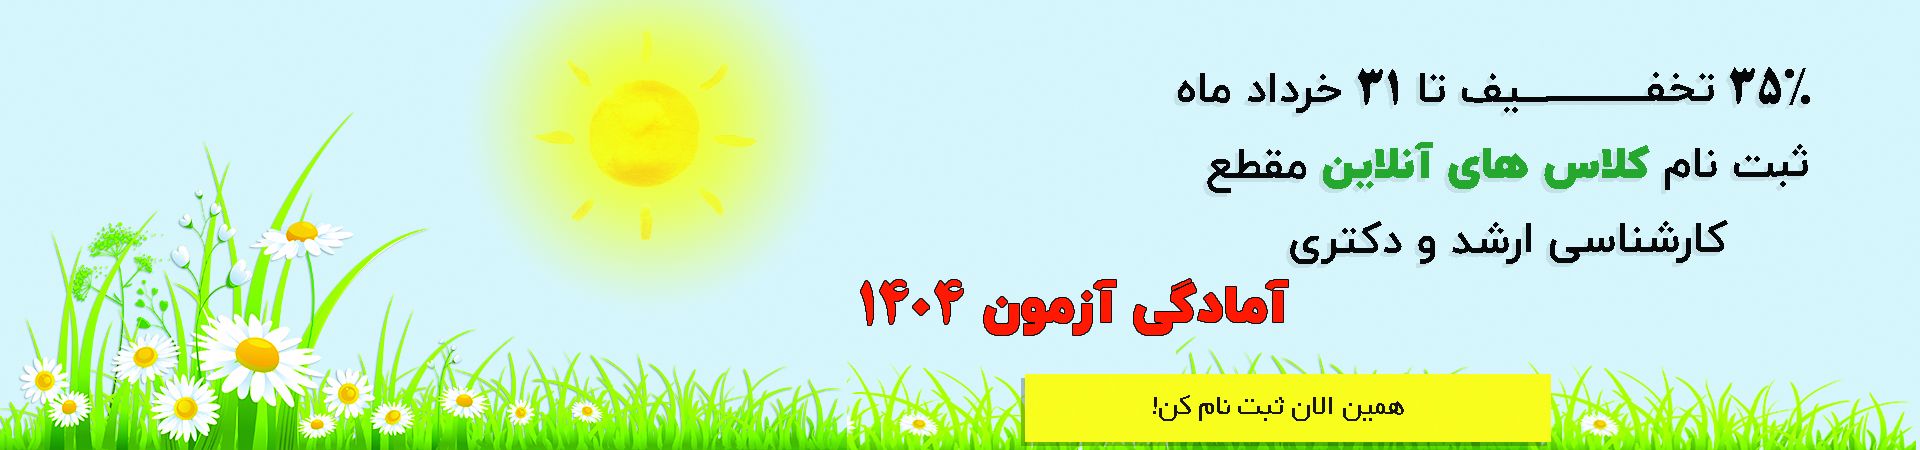 ثبت نام کلاس های آنلاین مدرسان شریف